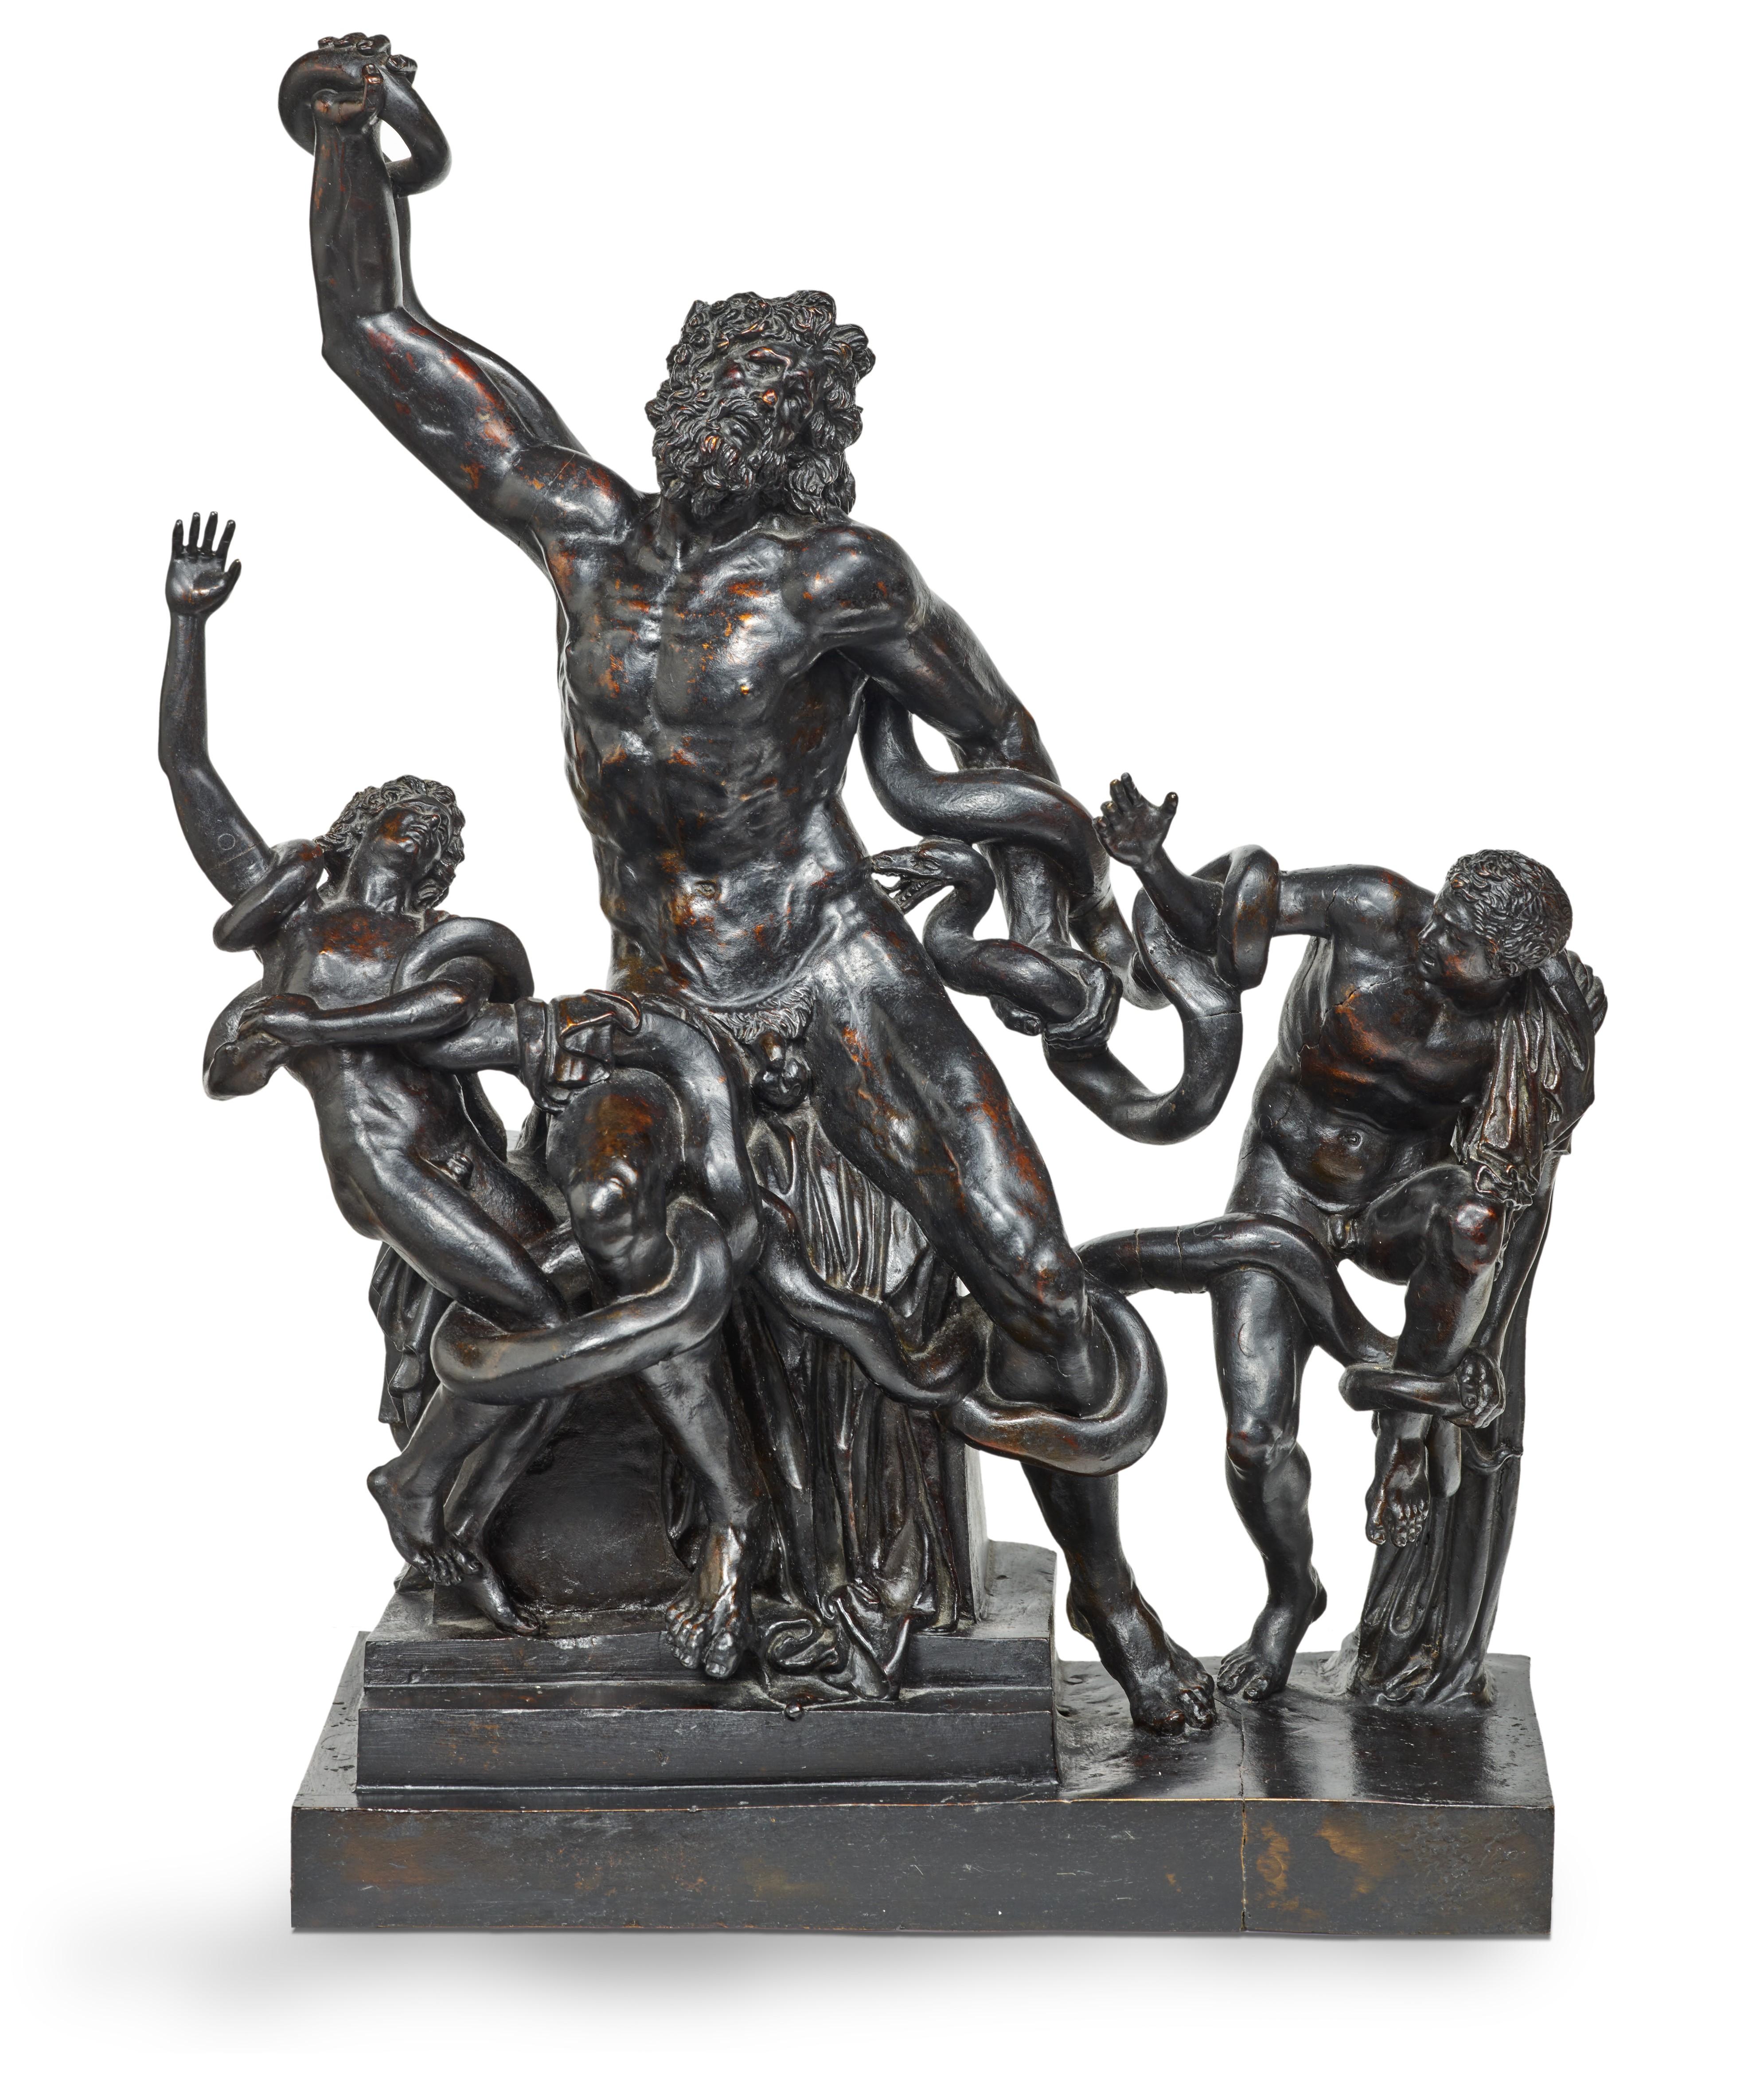 Cet exceptionnel groupe en bronze (inédit), exécuté à Rome dans la seconde moitié du XVIIIe siècle, témoigne de la fascination exercée par le Laocoön depuis sa découverte le 14 janvier 1506 sur l'Esquilin, à l'emplacement de la Maison dorée de Nero